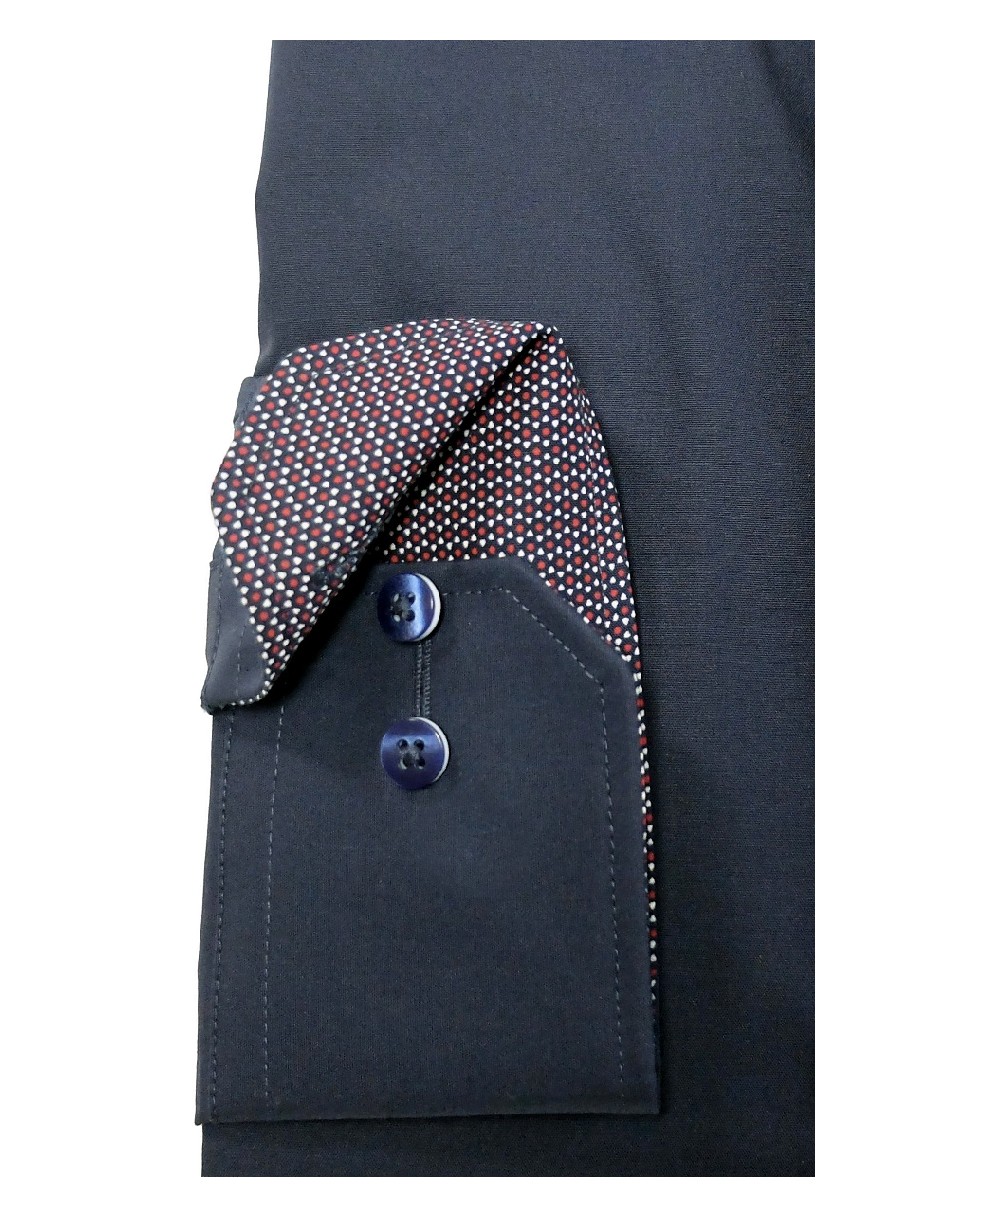 Hochwertige Brusttasche fairen eterna führender Marken dunkelblau zu Comfort Langarmhemd mit Herrenmode - Fit